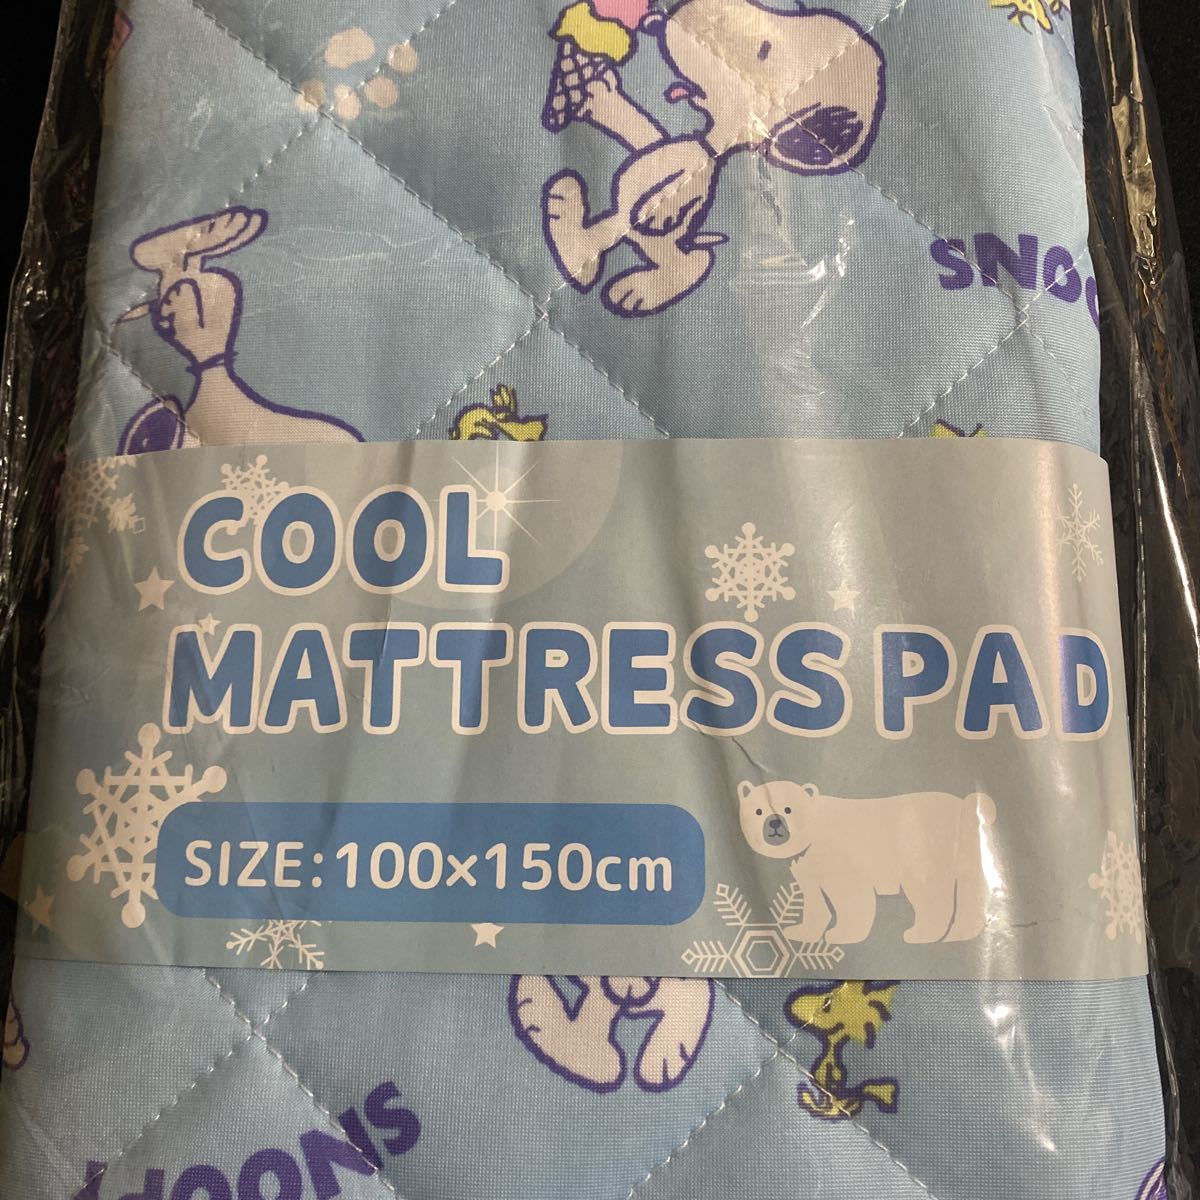  прохладный матрац накладка COOL MATTRESS PAD*SNOOPY Snoopy *Blue синий blue * примерно 100×150cm*.... наматрасник 